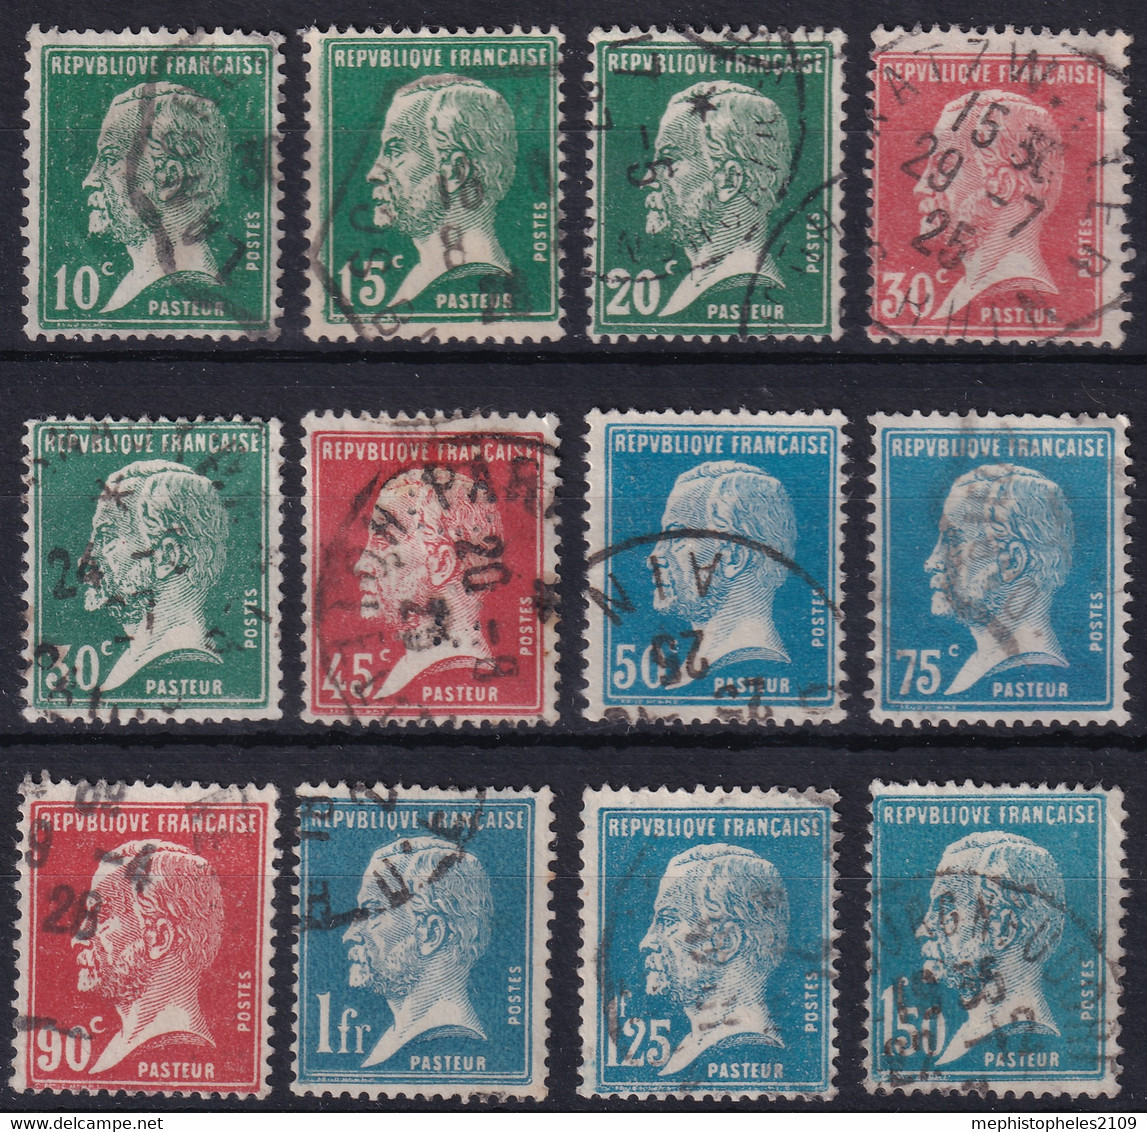 FRANCE 1923-26 - Canceled - YT 170-181 - Complete Set! - Used Stamps